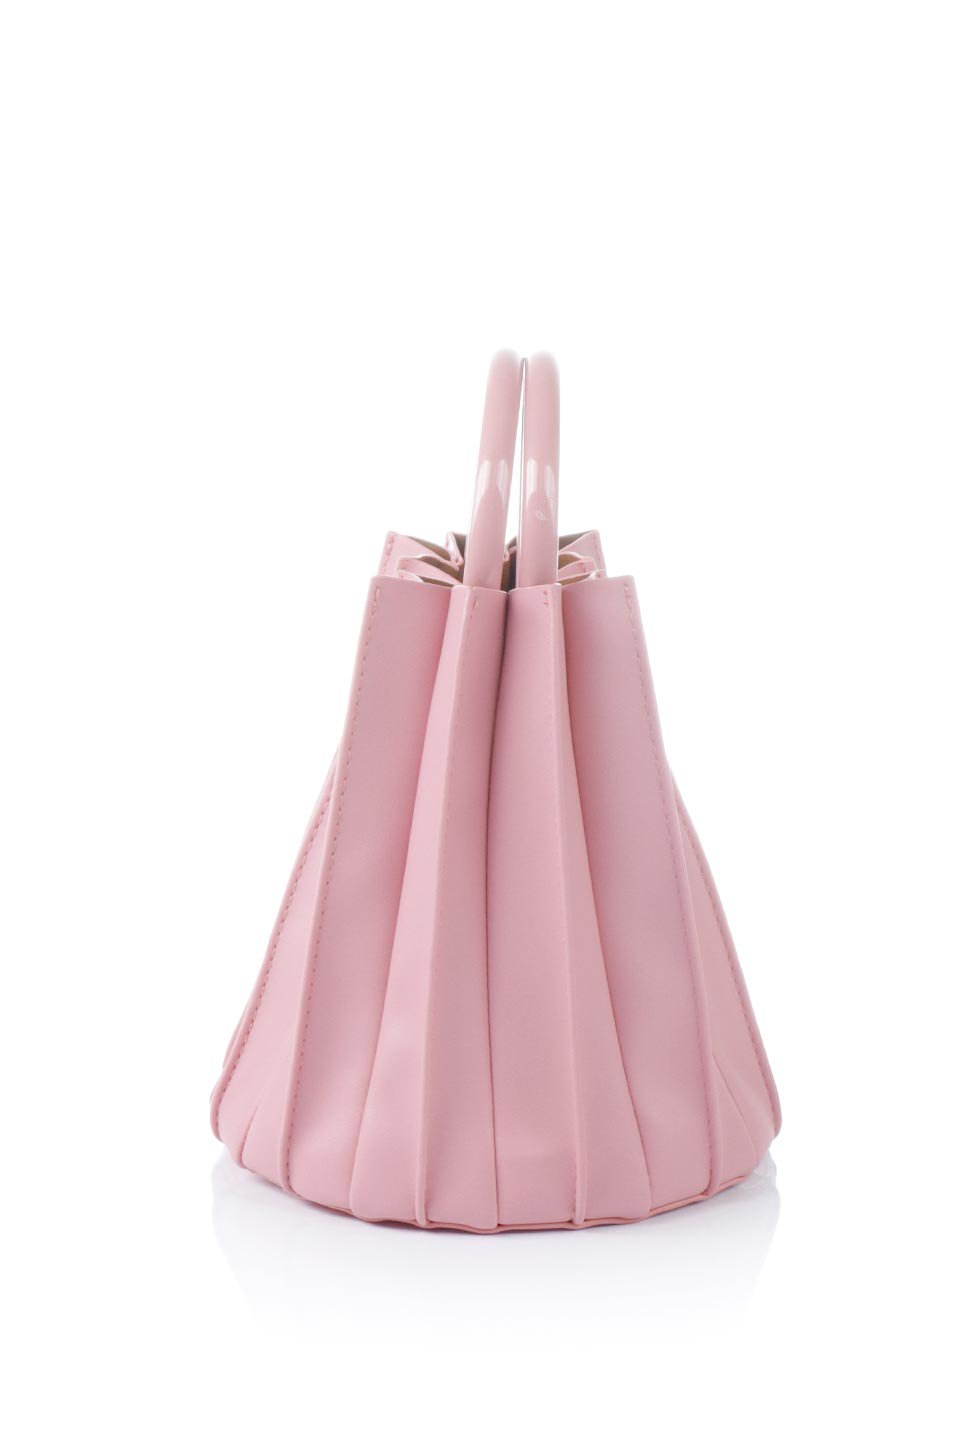 meliebiancoのLily(Pink)アコーディオンプリーツ・バケツバッグ/海外ファッション好きにオススメのインポートバッグとかばん、MelieBianco（メリービアンコ）のバッグやハンドバッグ。ビーガンレザーのアコーディオンプリーツが特徴のバケツ型バッグ。ハンドバッグとしてもストラップを付けてショルダーバッグとしても使用できます。/thumb-2